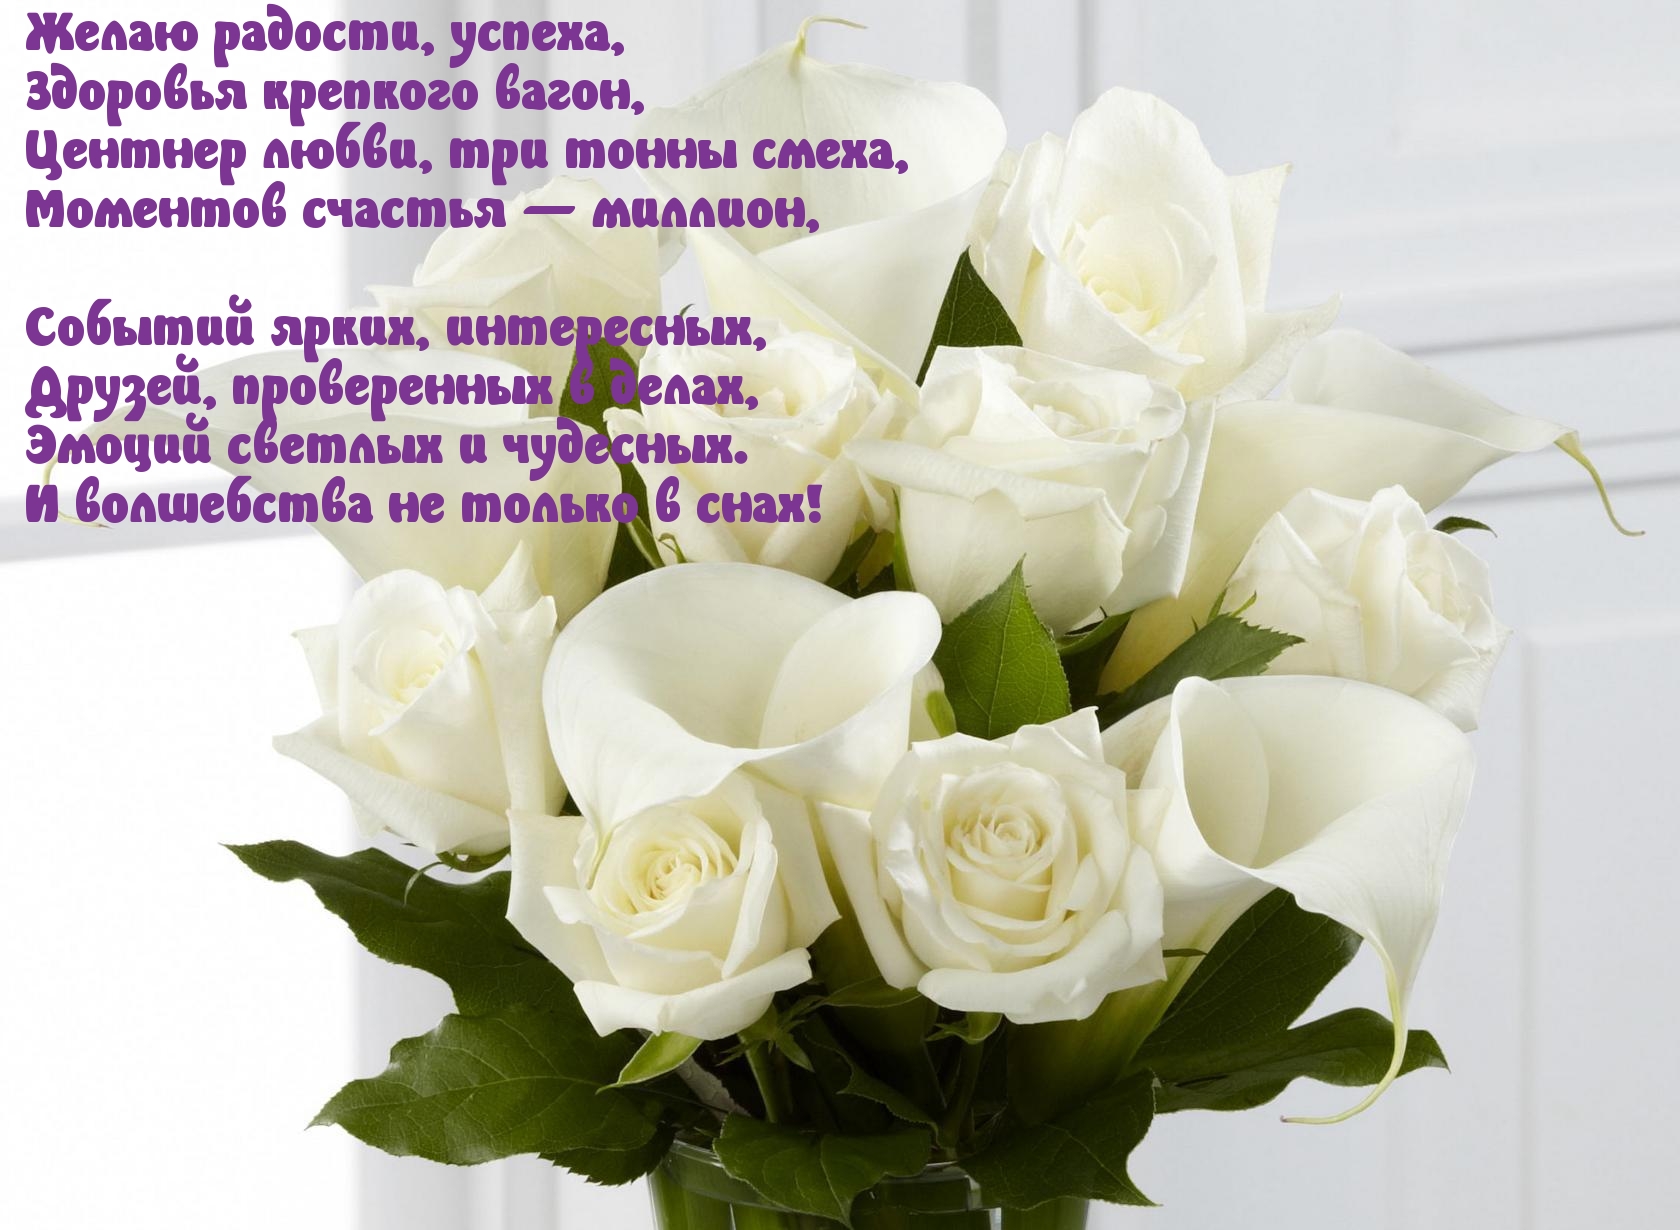 Пусть сюрпризы будут только приятные. Белые розы поздравление. С днём рождения женщине белые розы. Открытки с днём рождения женщине белые розы. Открытки с белыми розами.